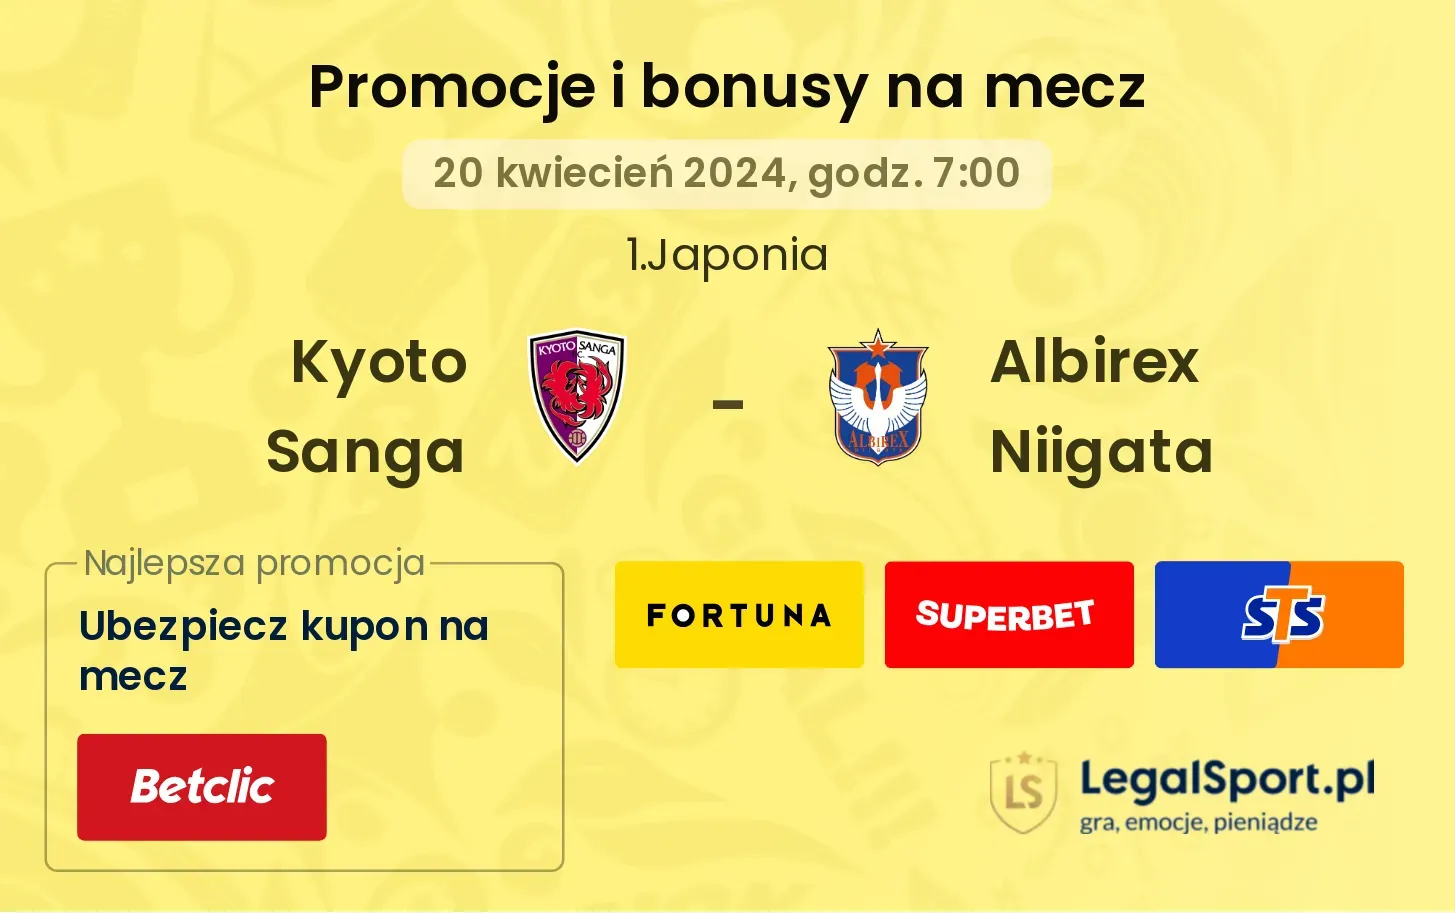 Kyoto Sanga - Albirex Niigata promocje bonusy na mecz